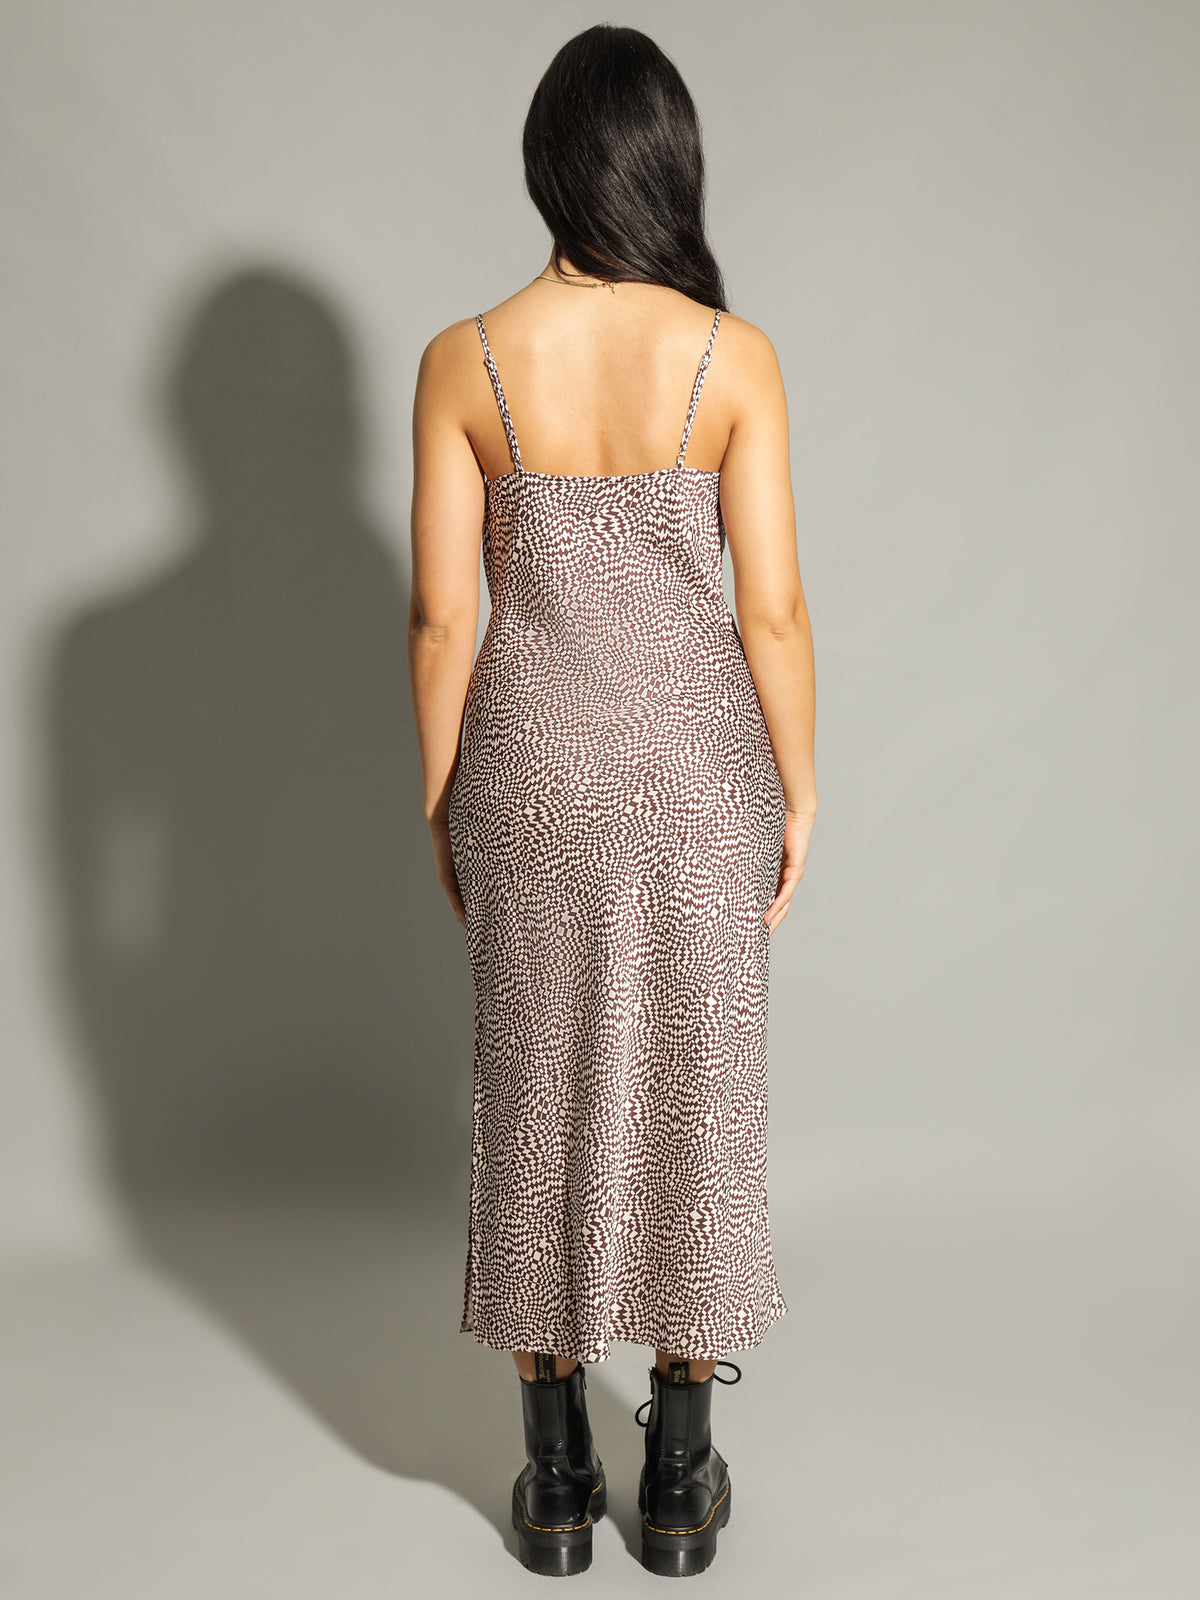 Novera Satin Midi Dress in Checkerboard